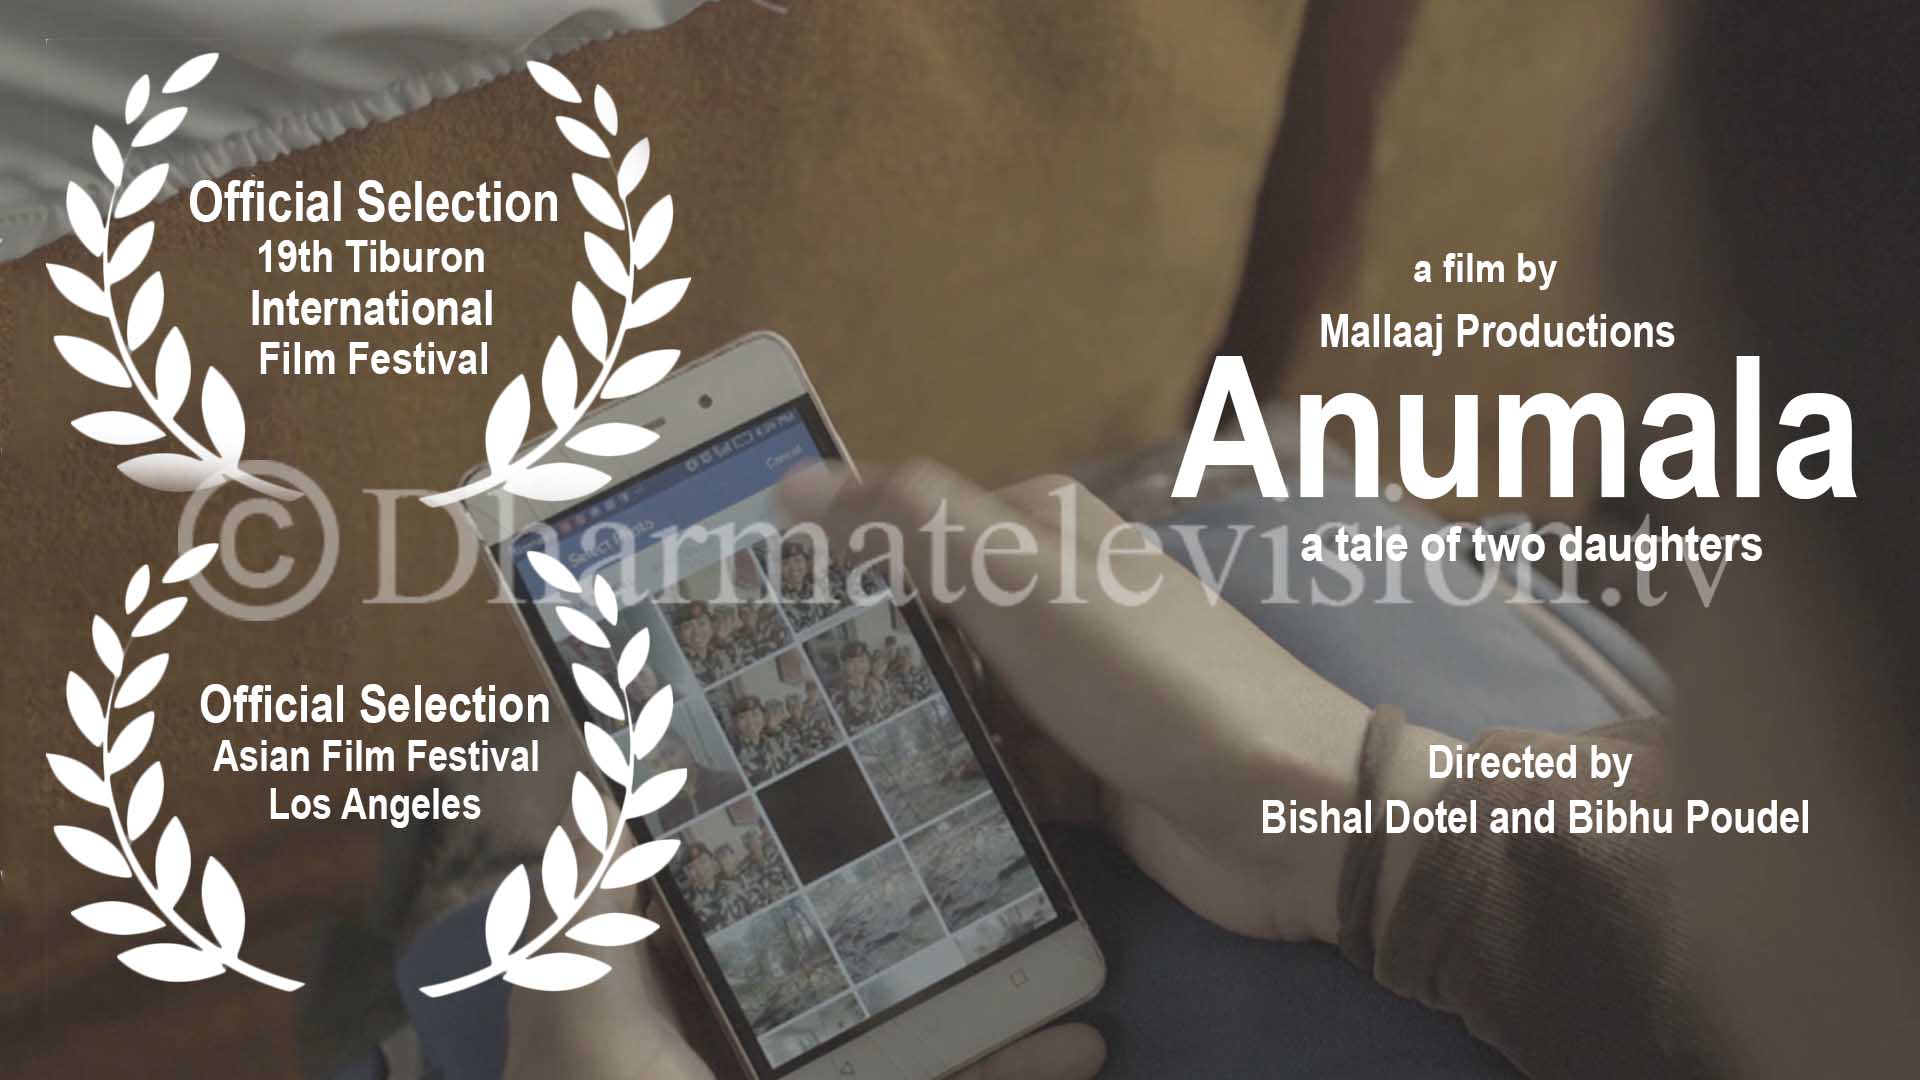 अमेरिकाका दुइ चलचित्र महोत्सव, एसियन फिल्म फेस्टिवल र टिबुरोन फिल्म फेस्टिवल मा नेपाली छोटो चलचित्र 'अनुमाला' छनोट - मानब बेचबिखन बिरुद्धबनेको लघु चलचित्र सार्बजनिक